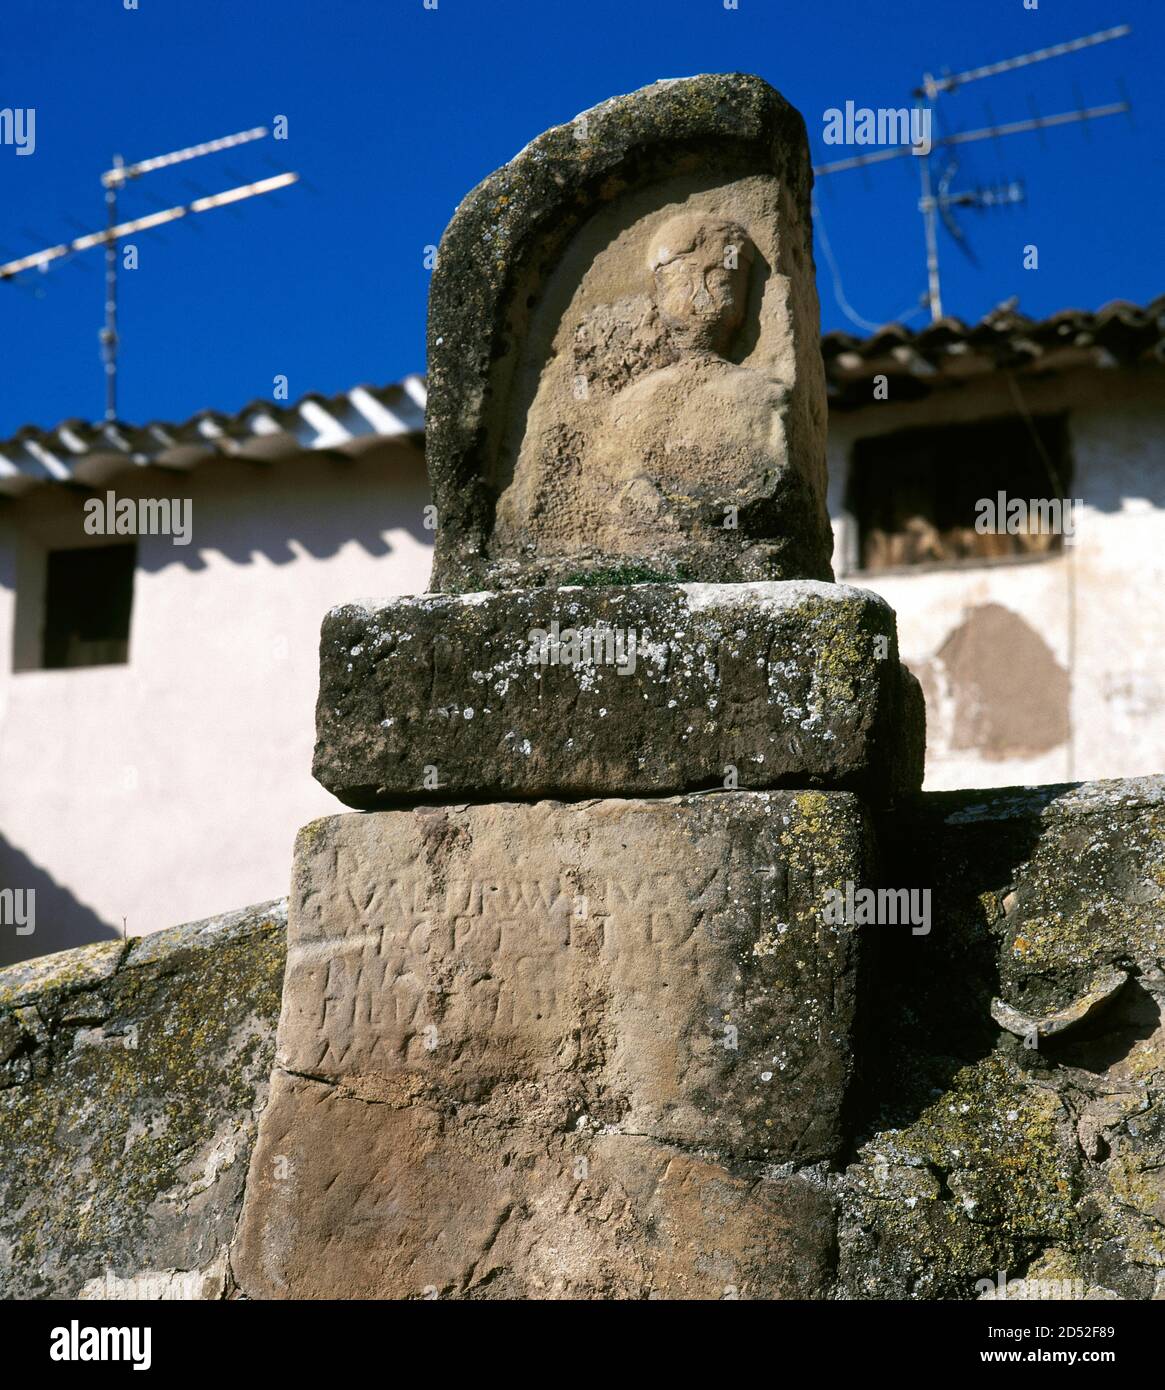 Spagna, la Rioja, Tricio. Stele funeraria romana nell'antica città del trizio, il primo centro di produzione di ceramica romana (terra sigillata) nella penisola iberica. Foto Stock